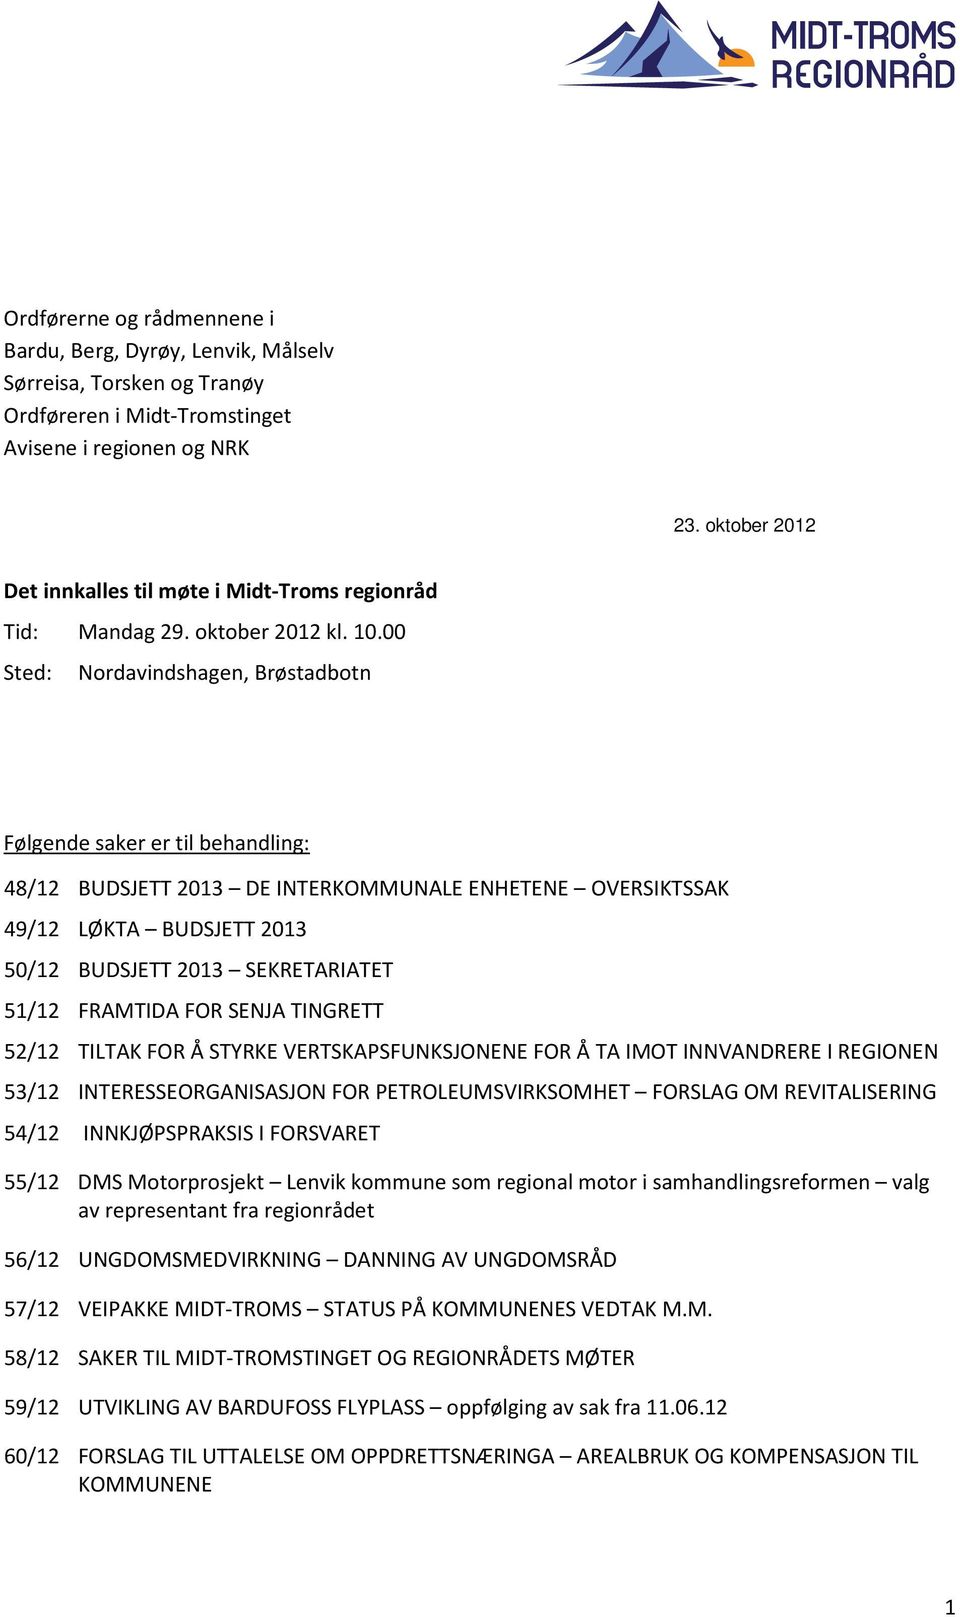 00 Sted: Nordavindshagen, Brøstadbotn Følgende saker er til behandling: 48/12 BUDSJETT 2013 DE INTERKOMMUNALE ENHETENE OVERSIKTSSAK 49/12 LØKTA BUDSJETT 2013 50/12 BUDSJETT 2013 SEKRETARIATET 51/12